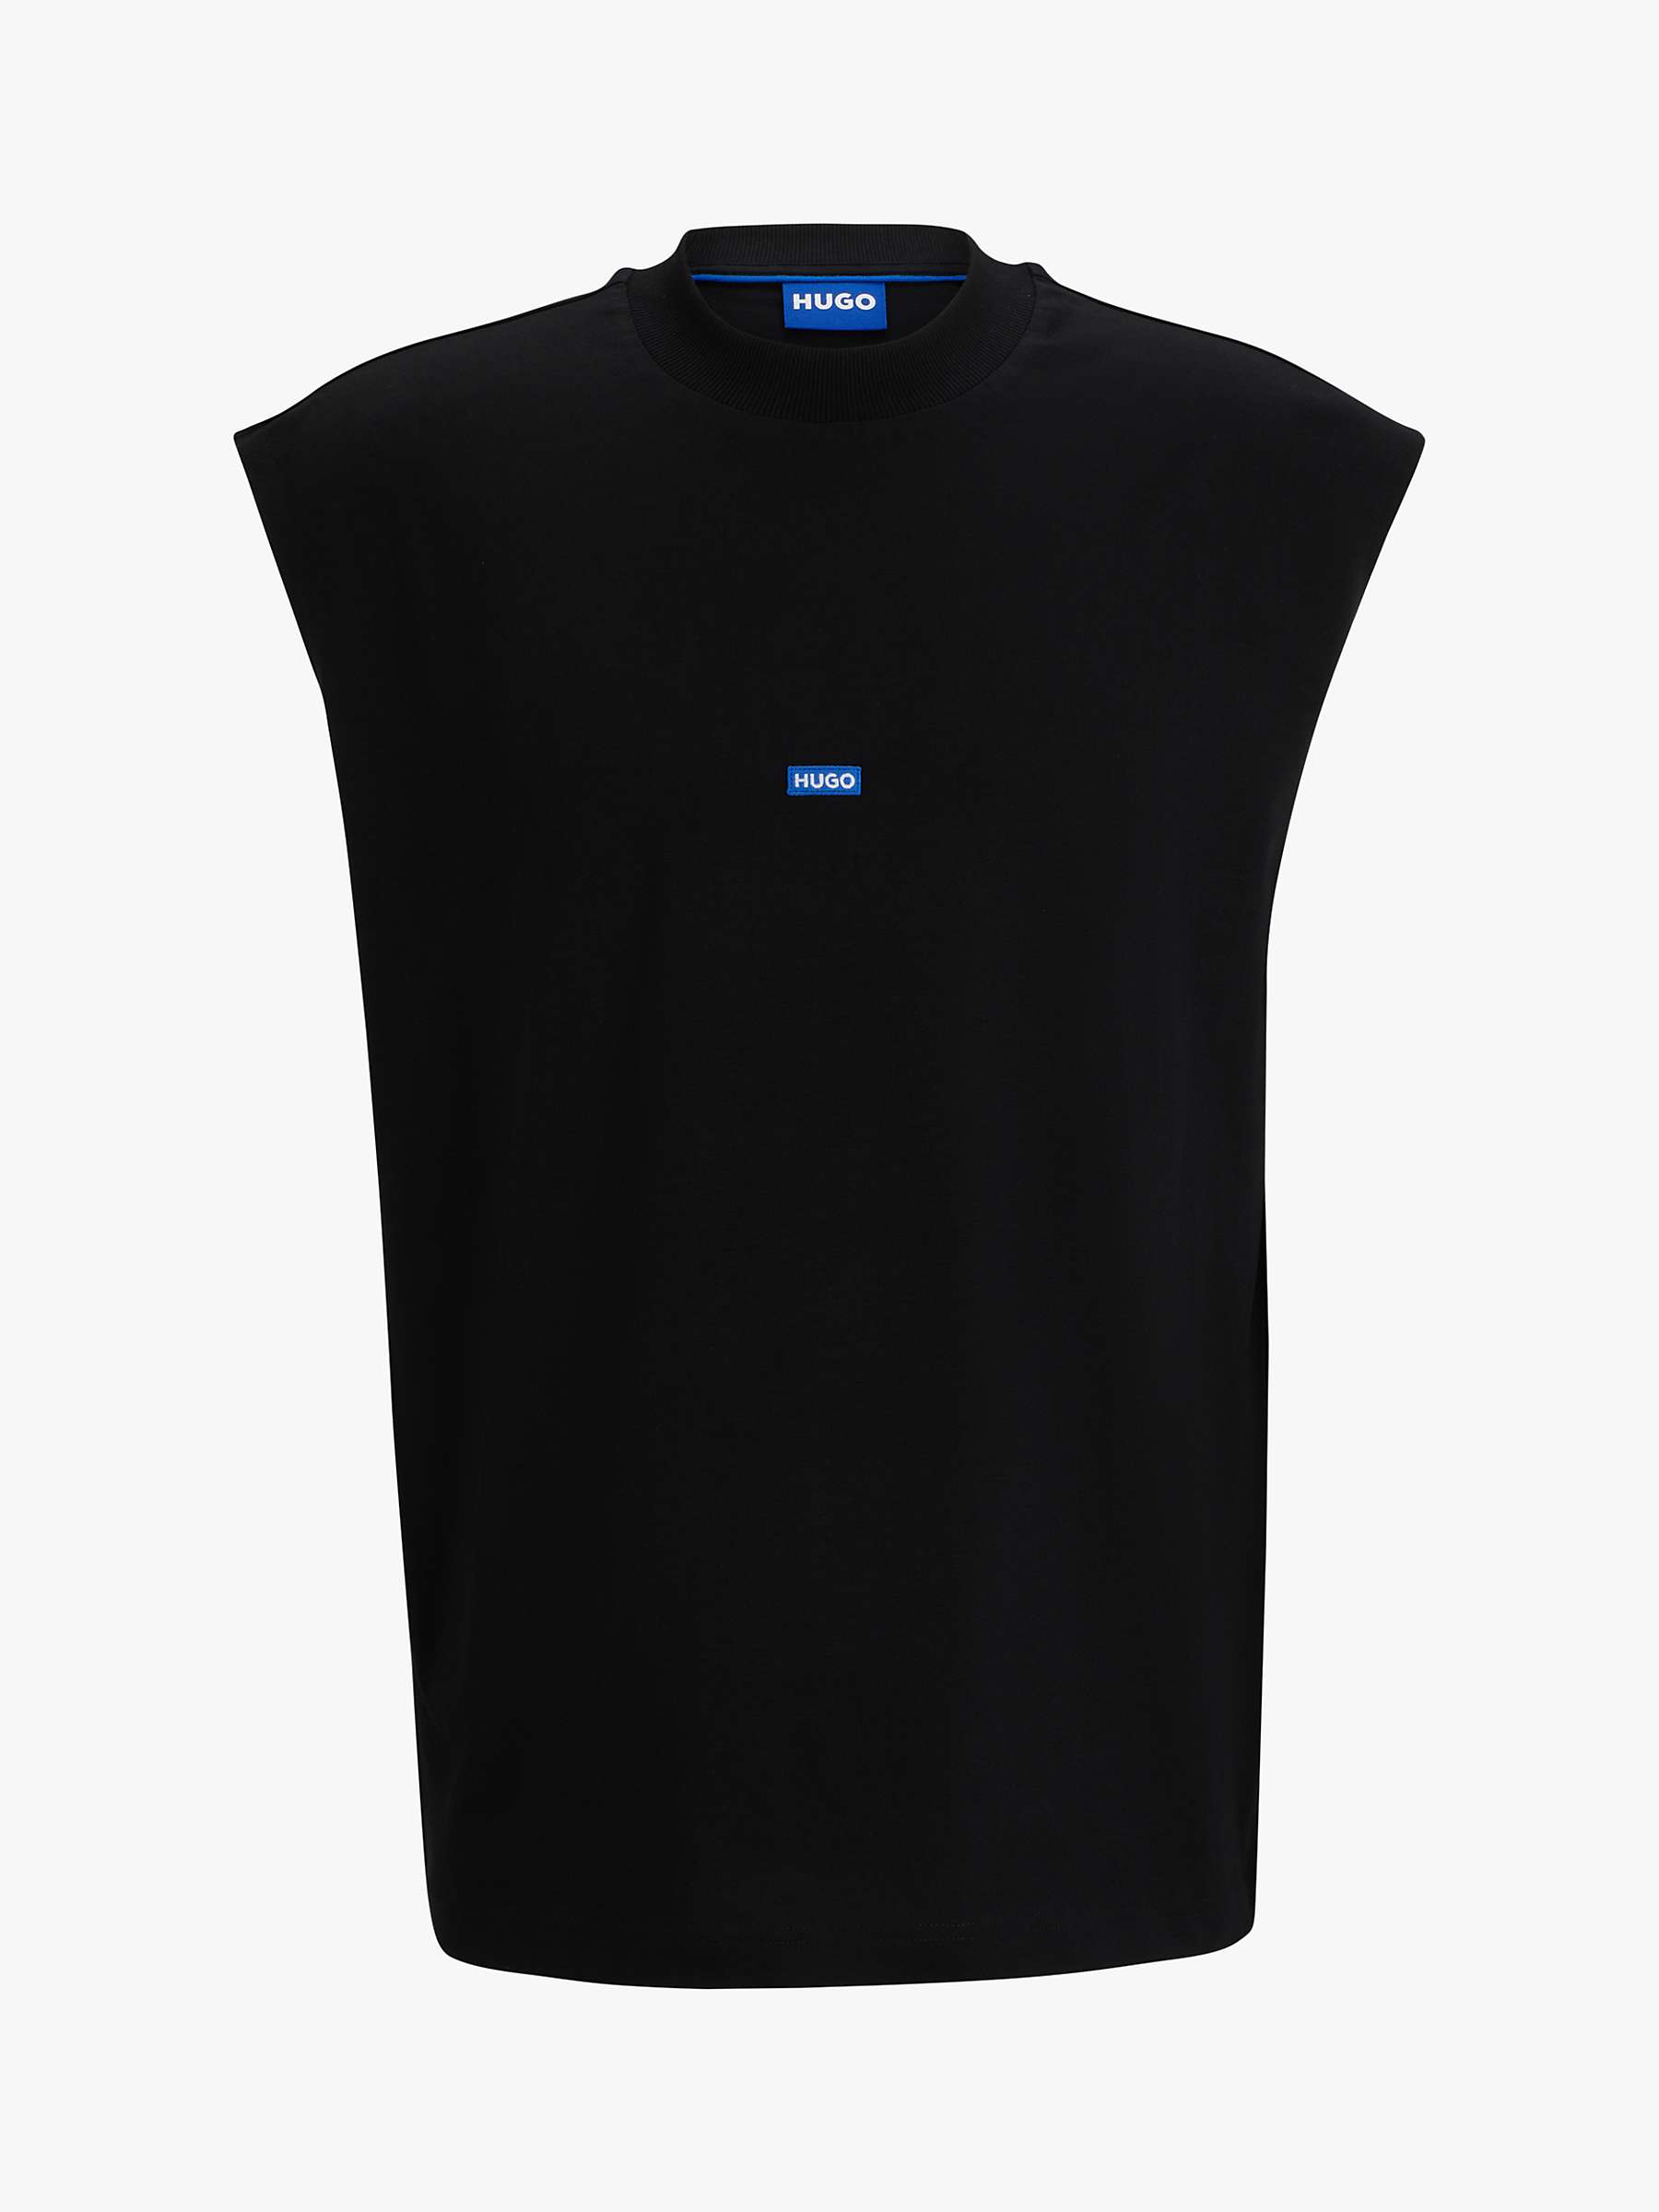 Buy HUGO Navertz Short Sleeve T-Shirt, Black Online at johnlewis.com